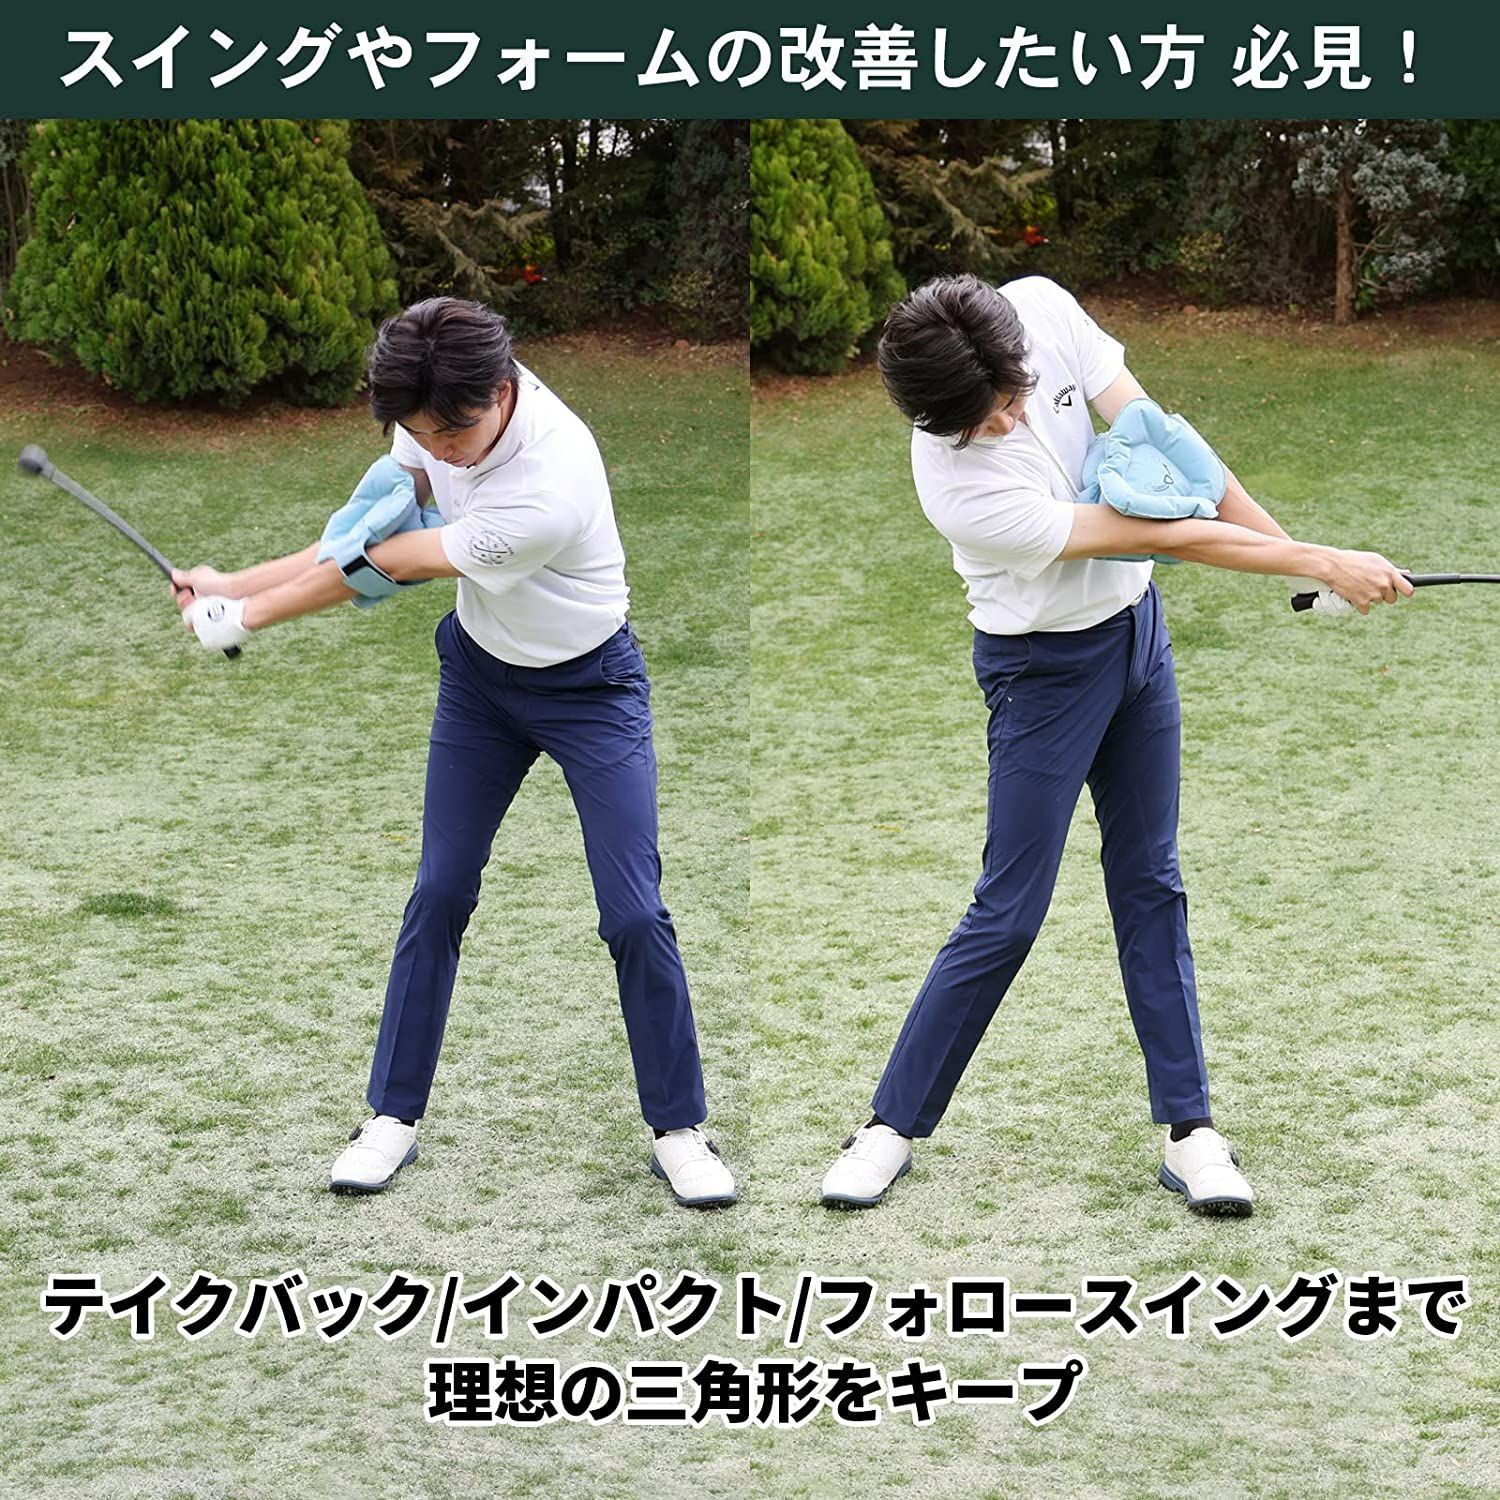 35％OFF 新品 Tabata タバタ ゴルフ 素振り トレーニング GV0366 7522.50円 ゴルフ